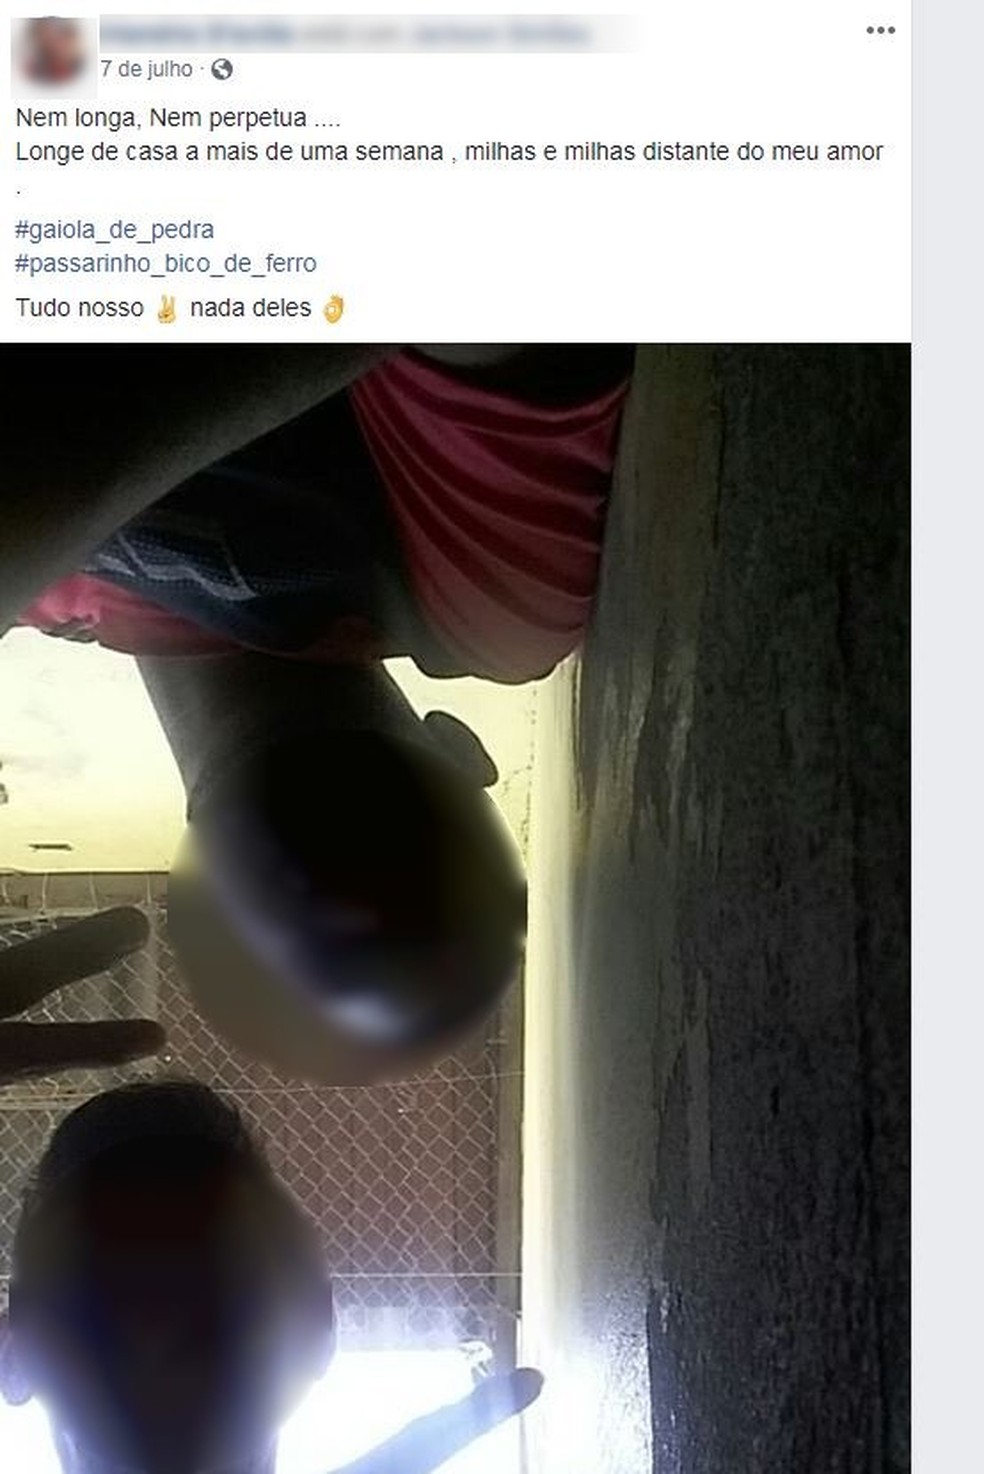 Em outro post, detento cita parte de música e marca colega durante o banho de sol (Foto: Reprodução/Facebook)